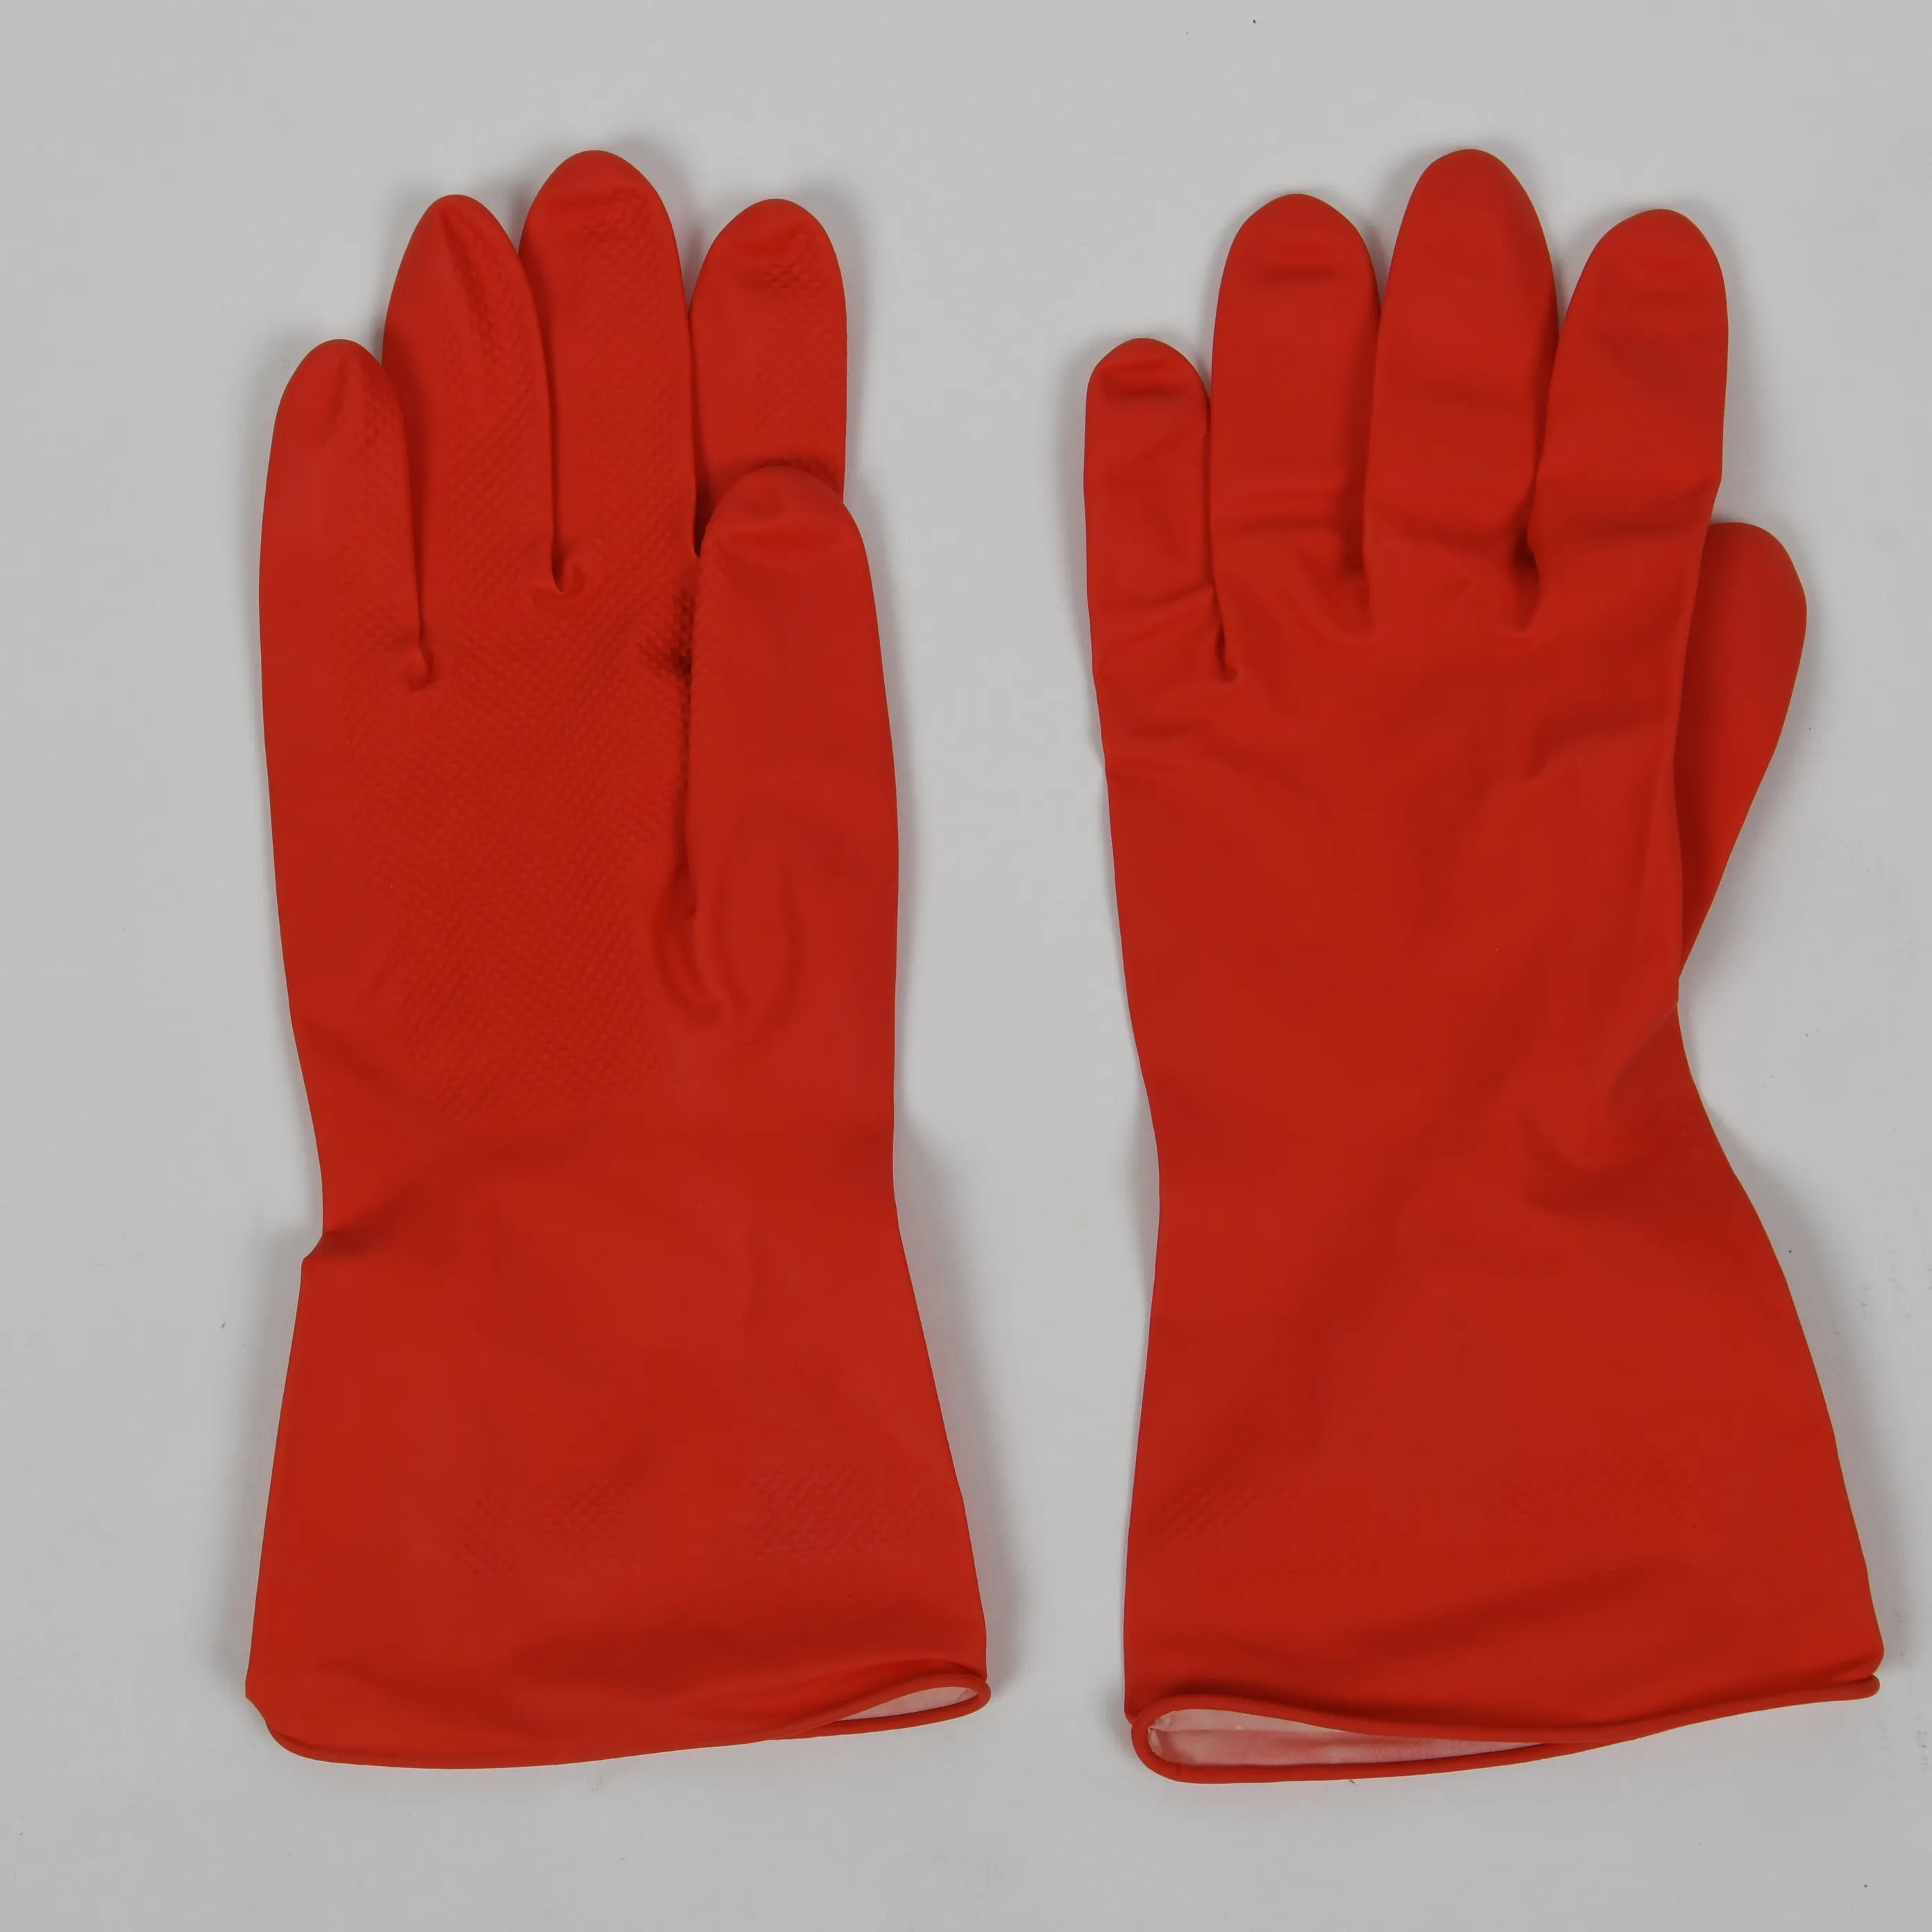 Özel 40g kırmızı lateks eldiven daldırma akın kaplı mutfak temizlik eldiveni su geçirmez ev eldiven lateks